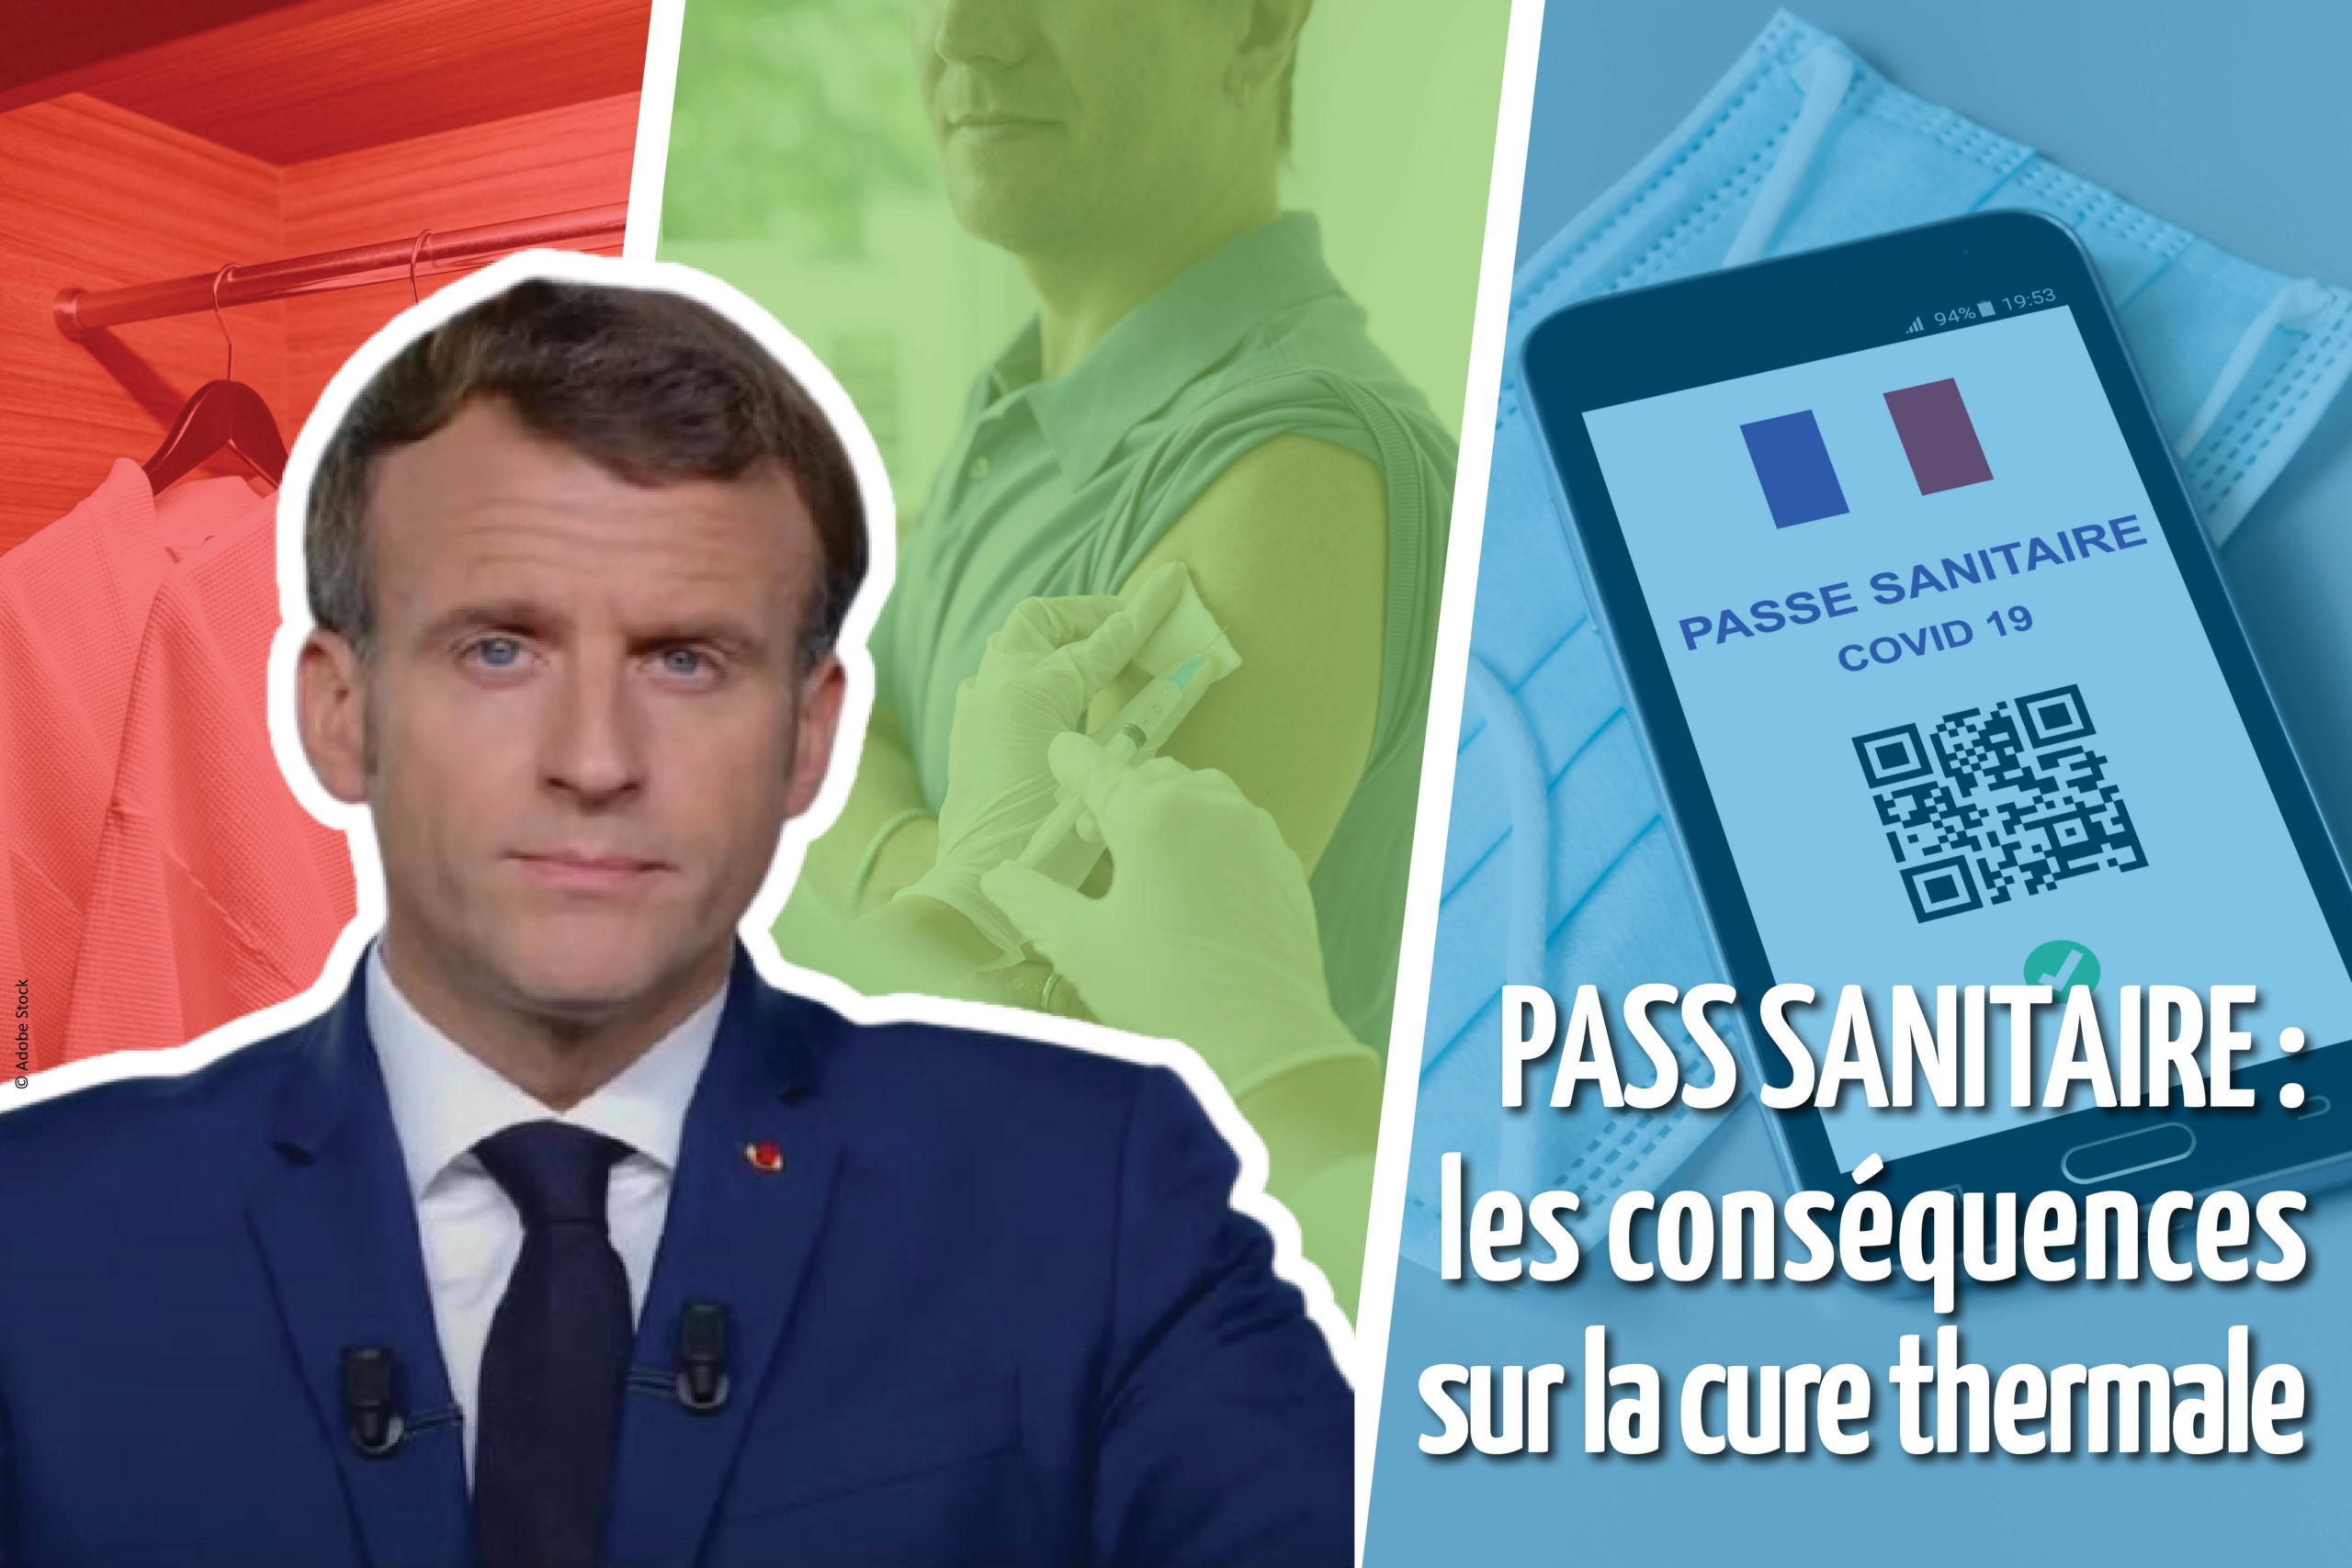 Pass sanitaire et cure thermale après le discours de Macron